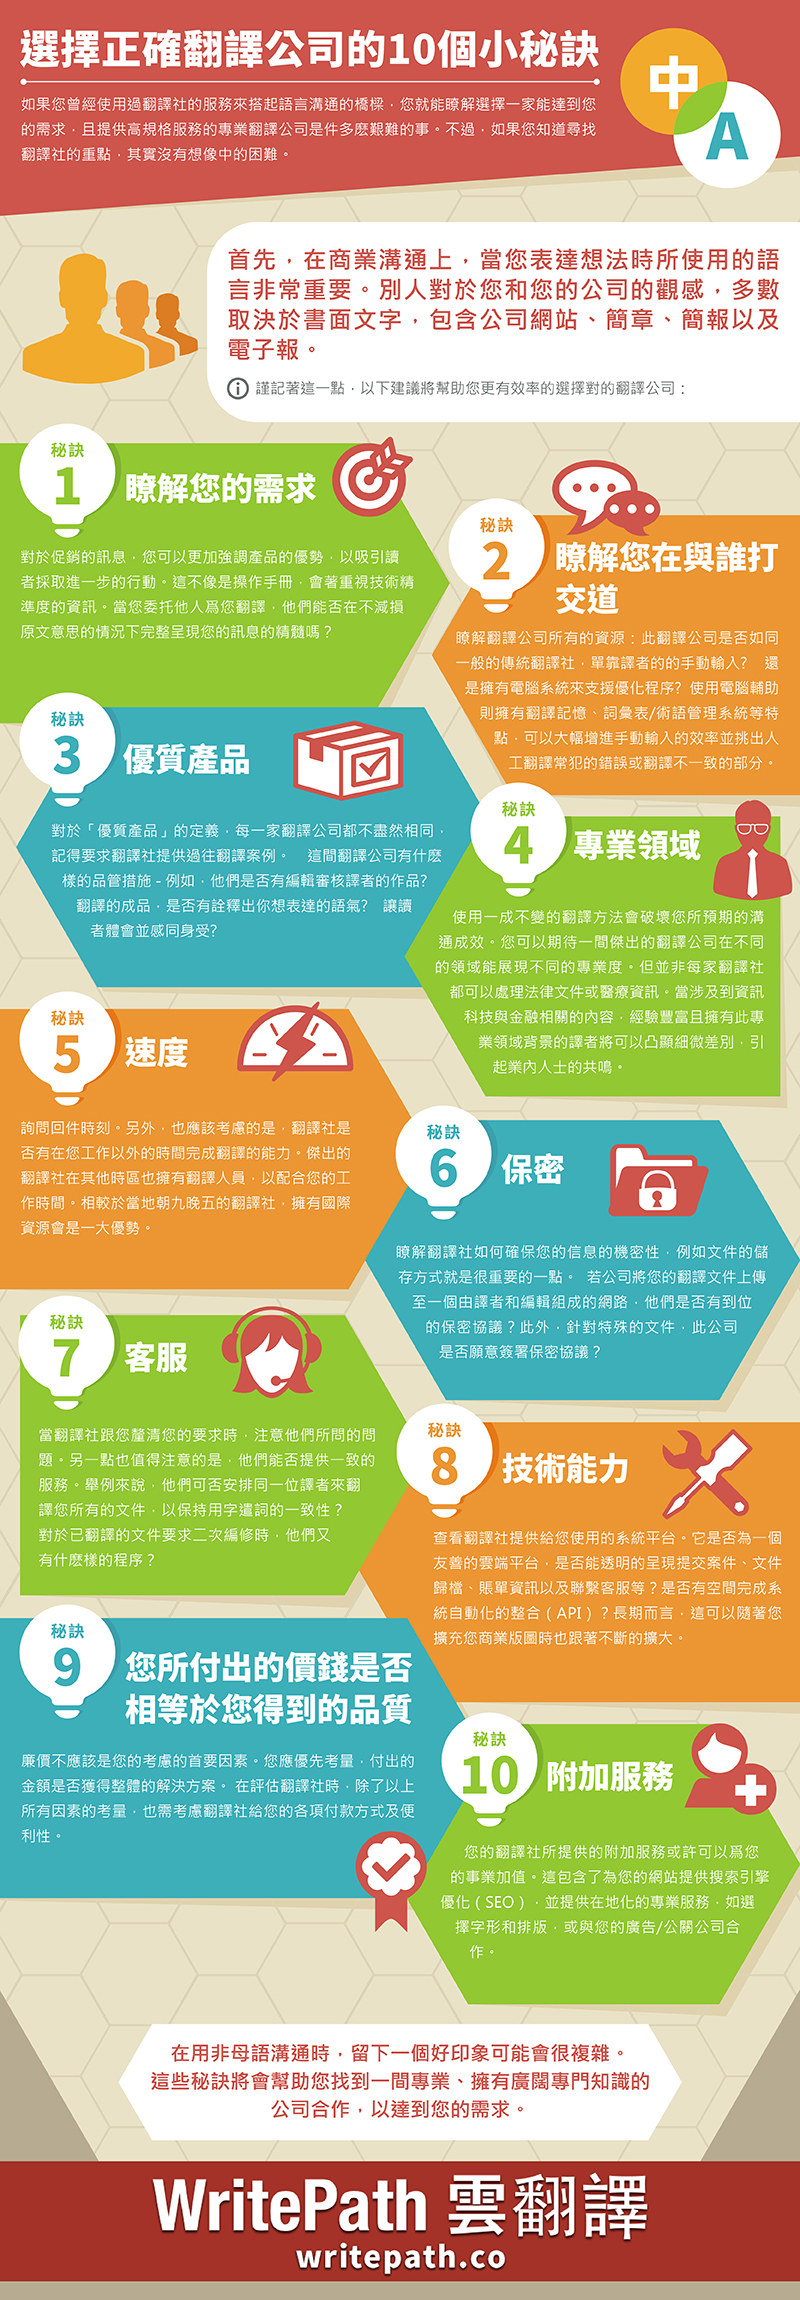 [Infographic] 選擇正確翻譯公司的10個小秘訣